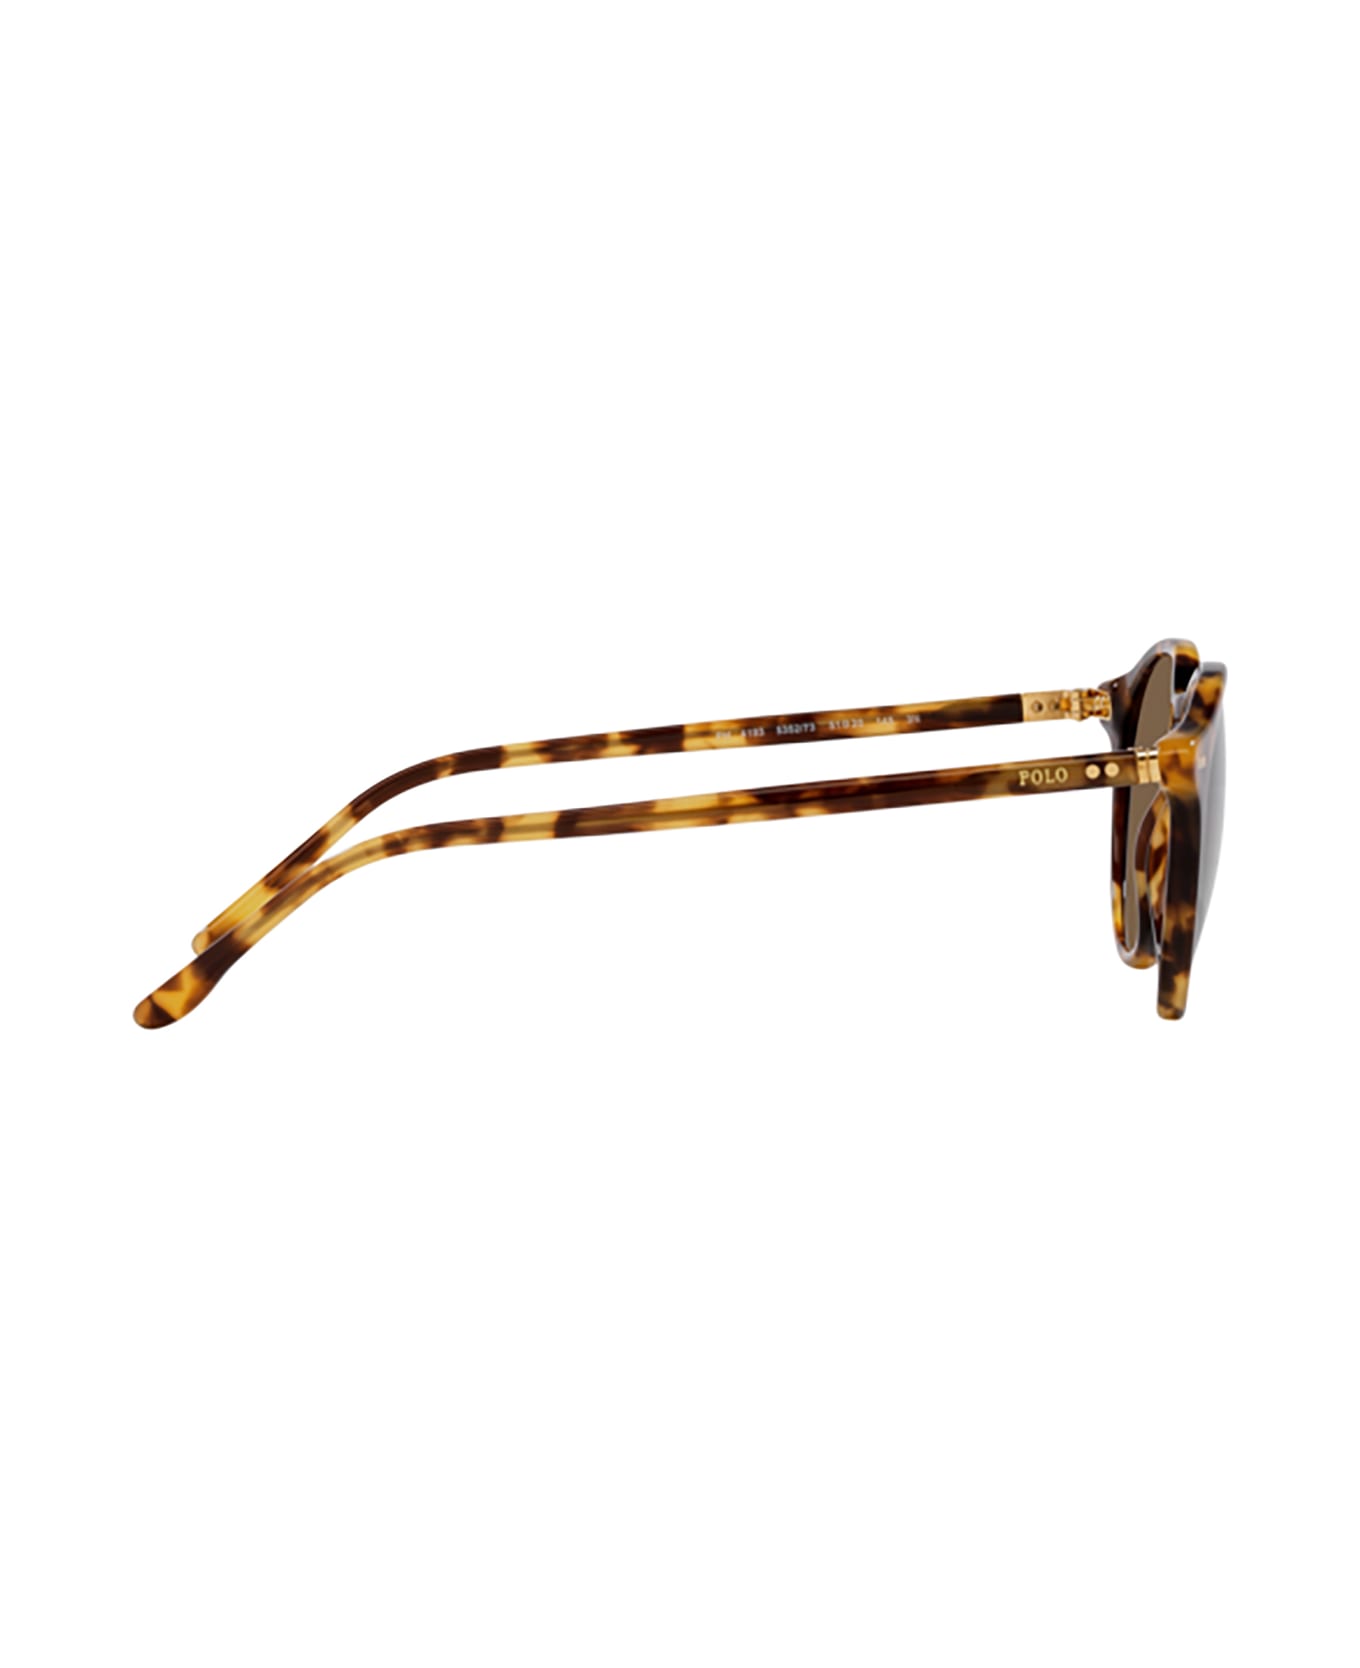 Polo Ralph Lauren Ph4193 Shiny Spotty Havana Sunglasses - Shiny spotty havana サングラス